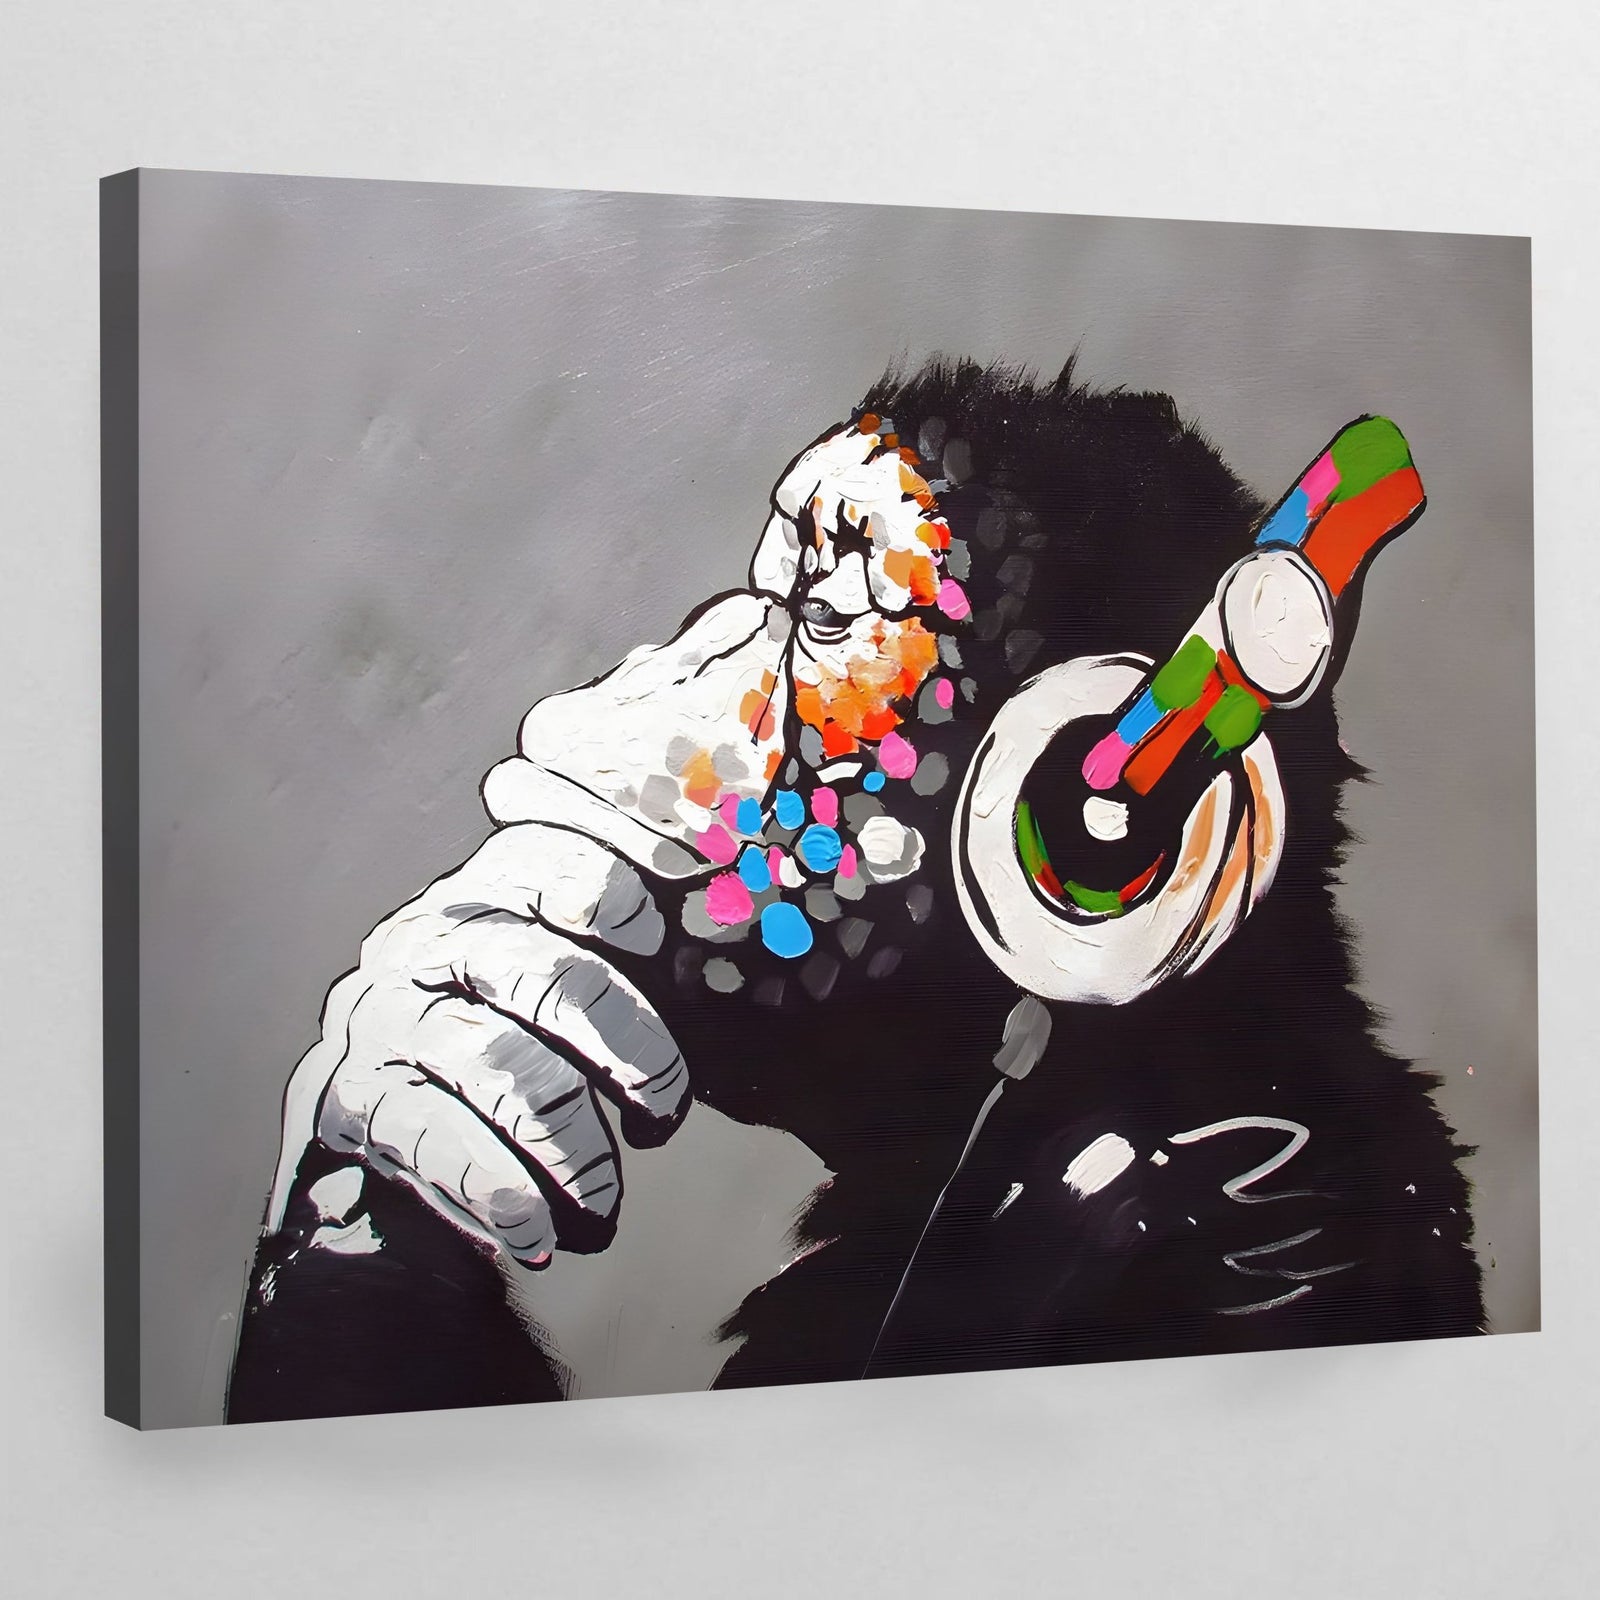 🎨 Achetez un tableau Banksy - Offres exceptionnelles 🚀 - The Art